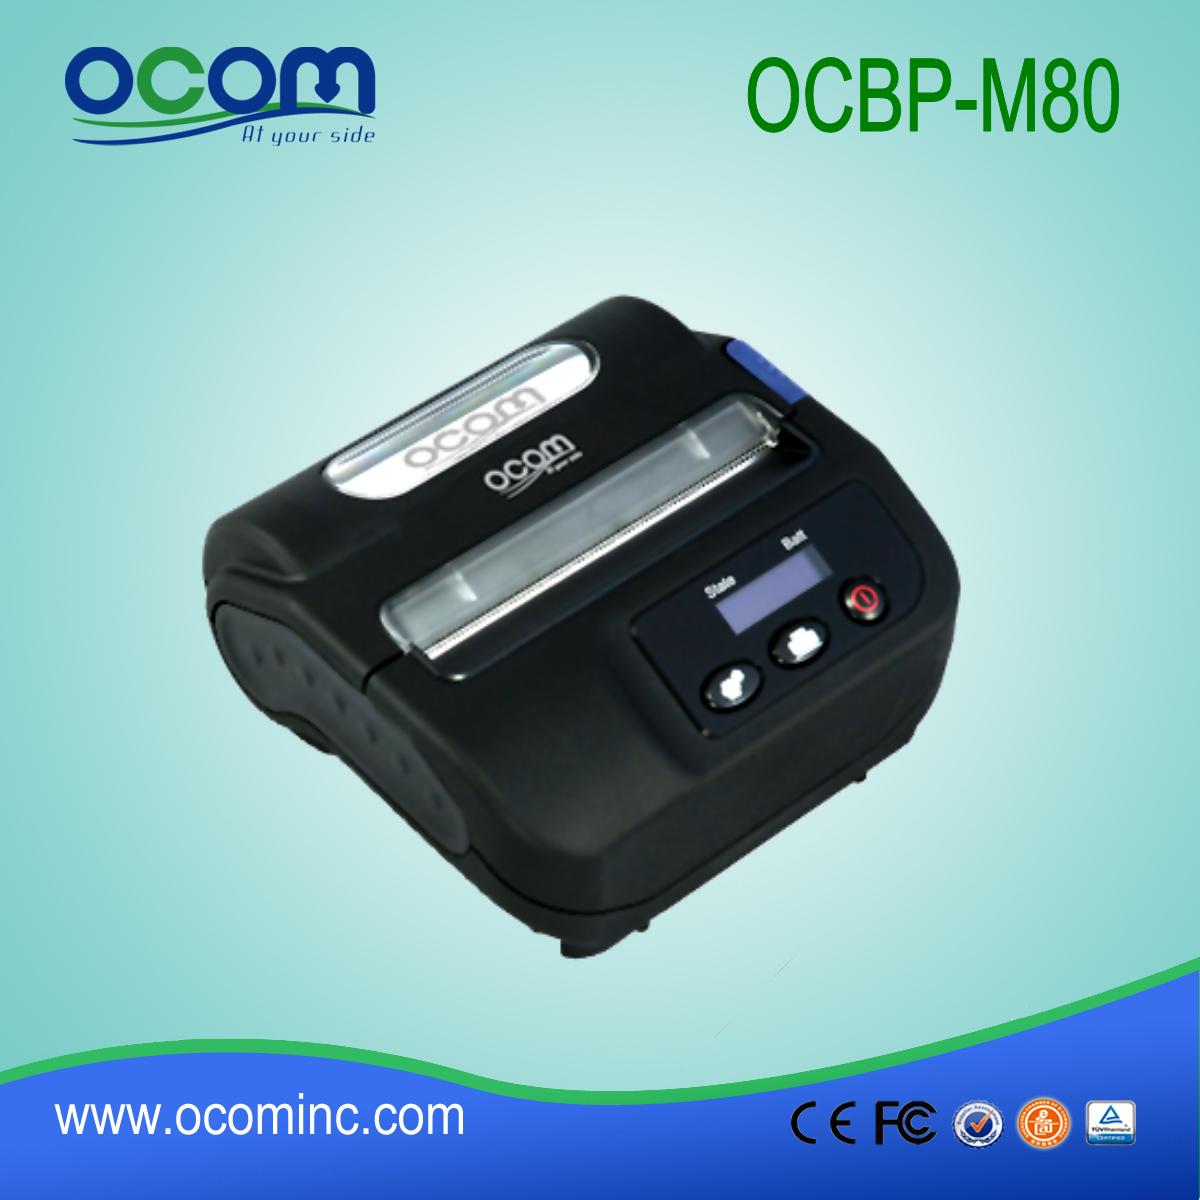 3 ιντσών φορητό μίνι κινητό Bluetooth εκτυπωτή barcode (OCBP-M80)